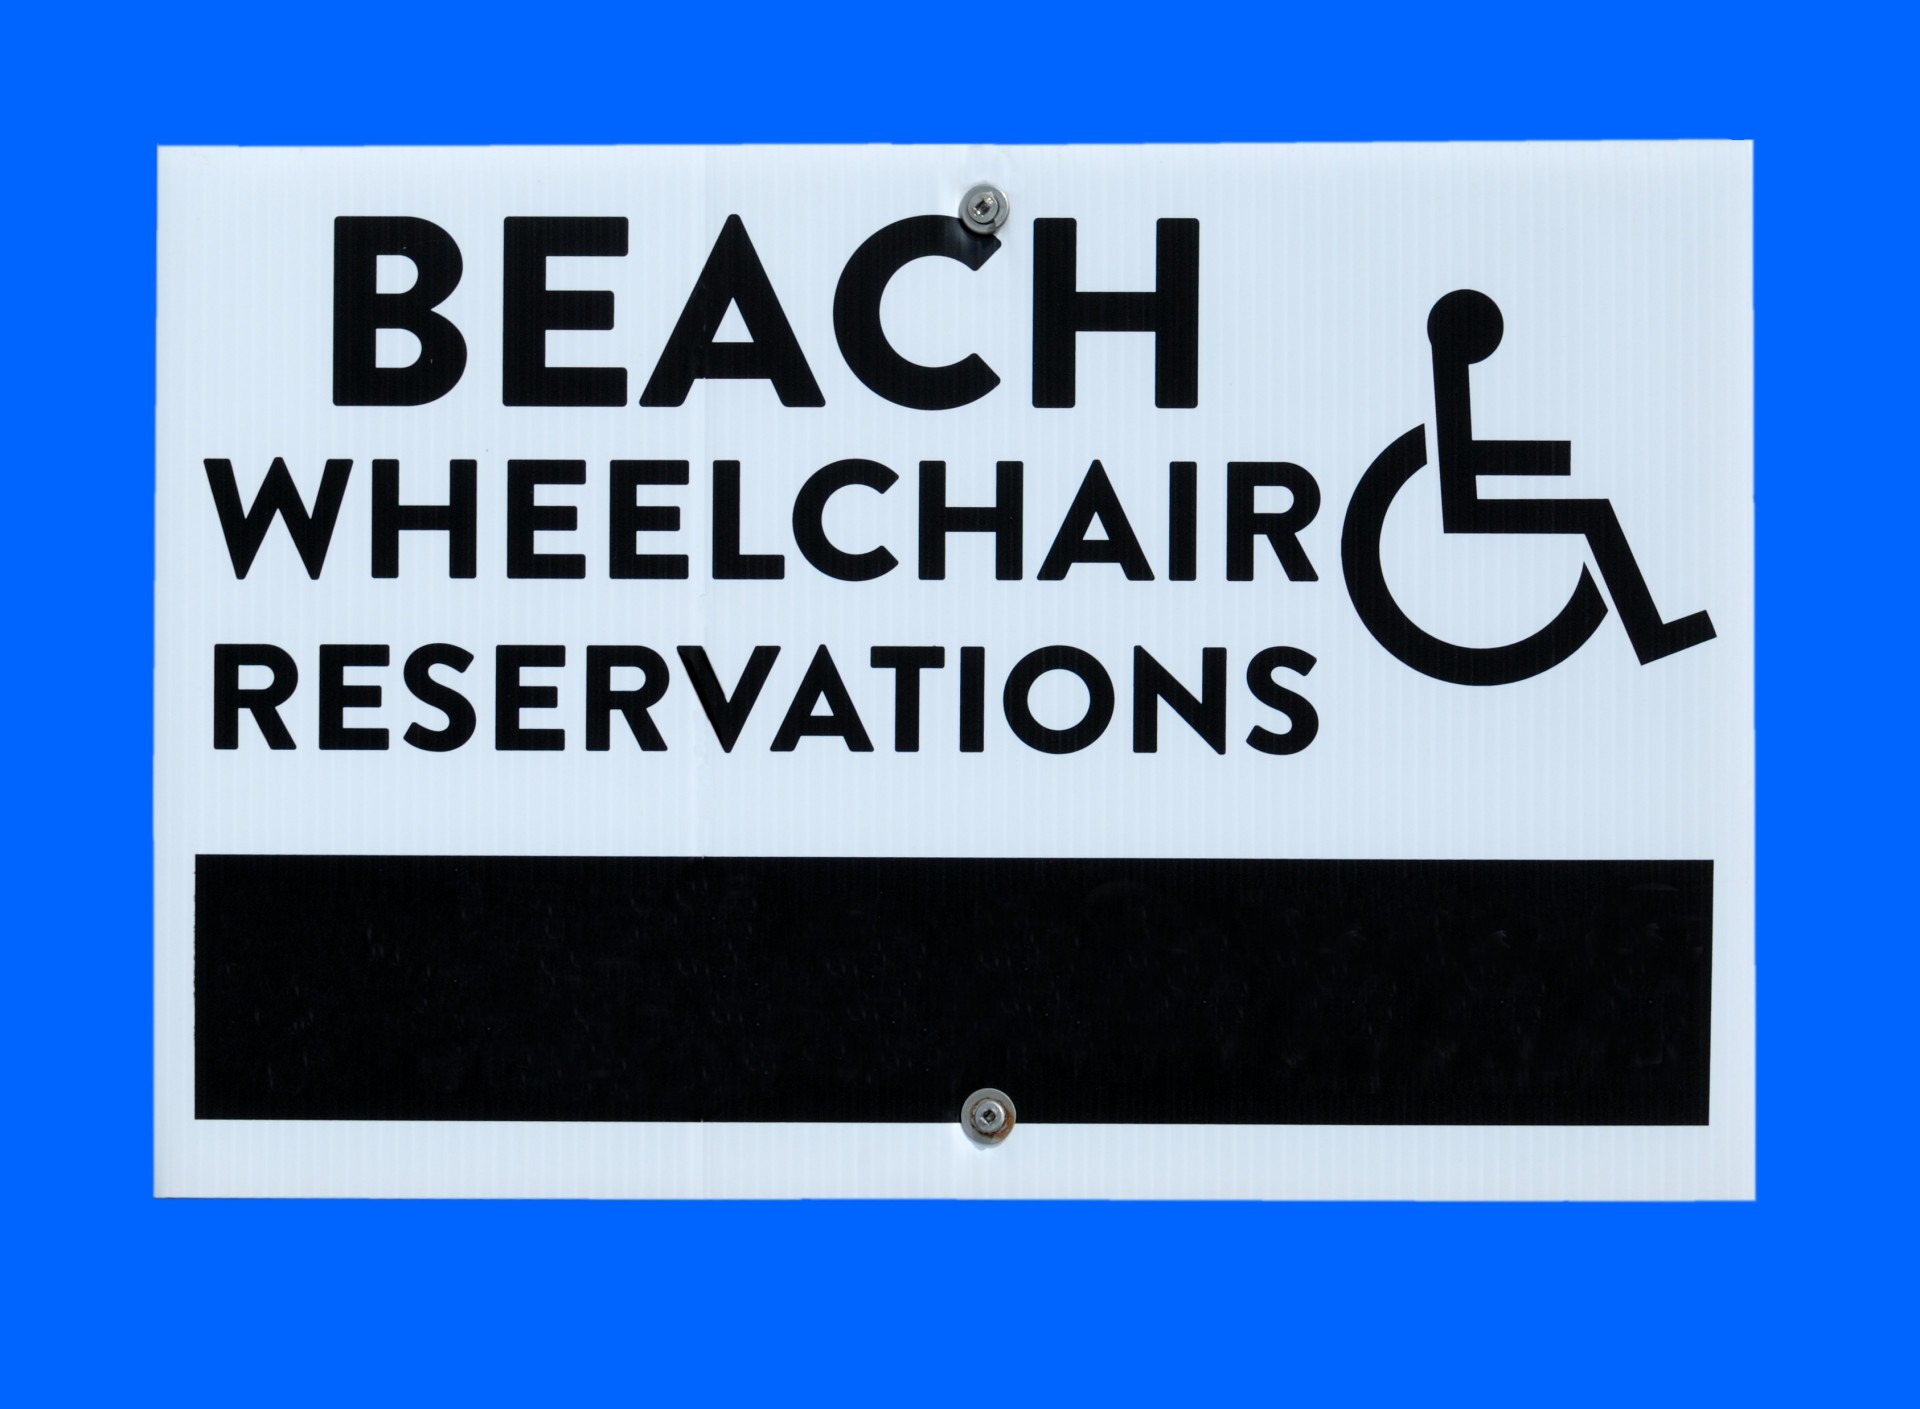 Beach Wheelchair rental sign at local beach Florida, USA.